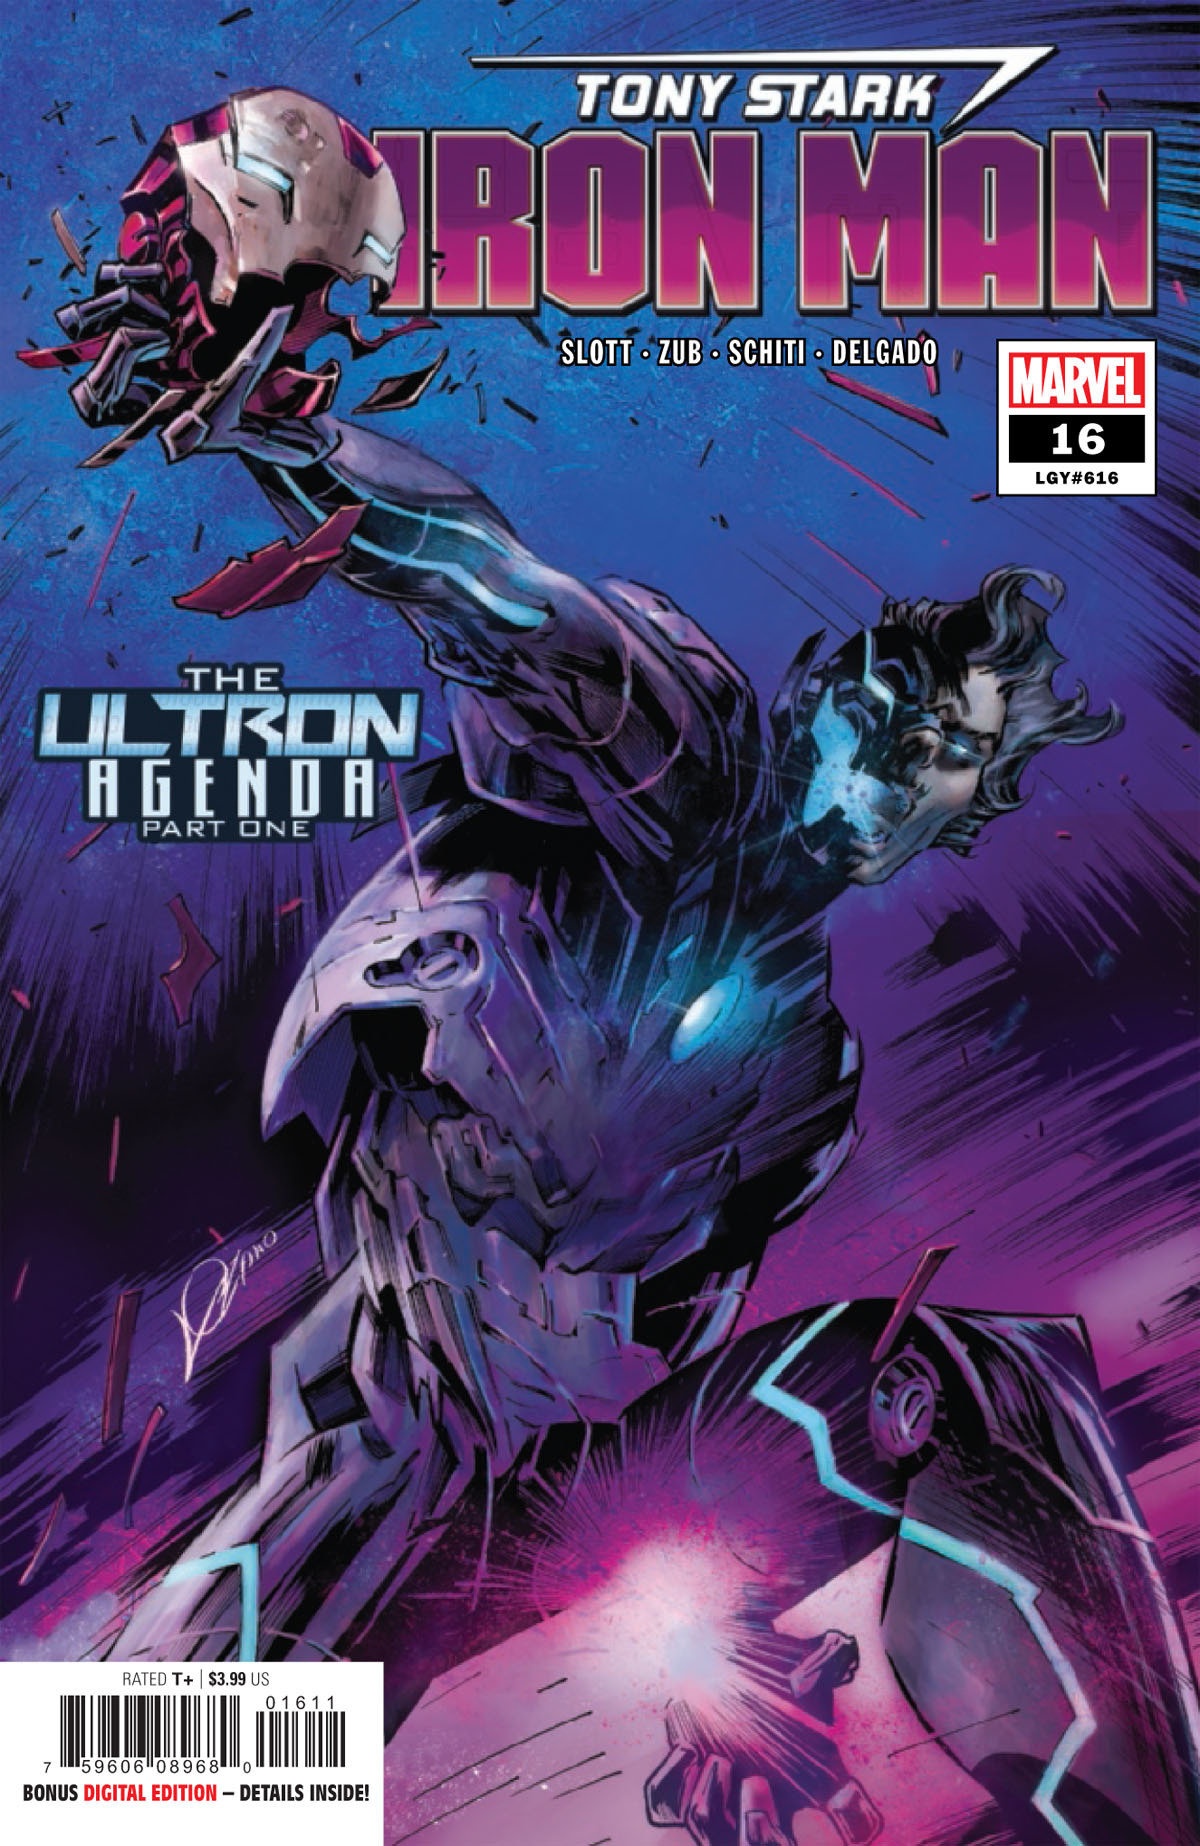 Tony Stark: Iron Man #16 cover